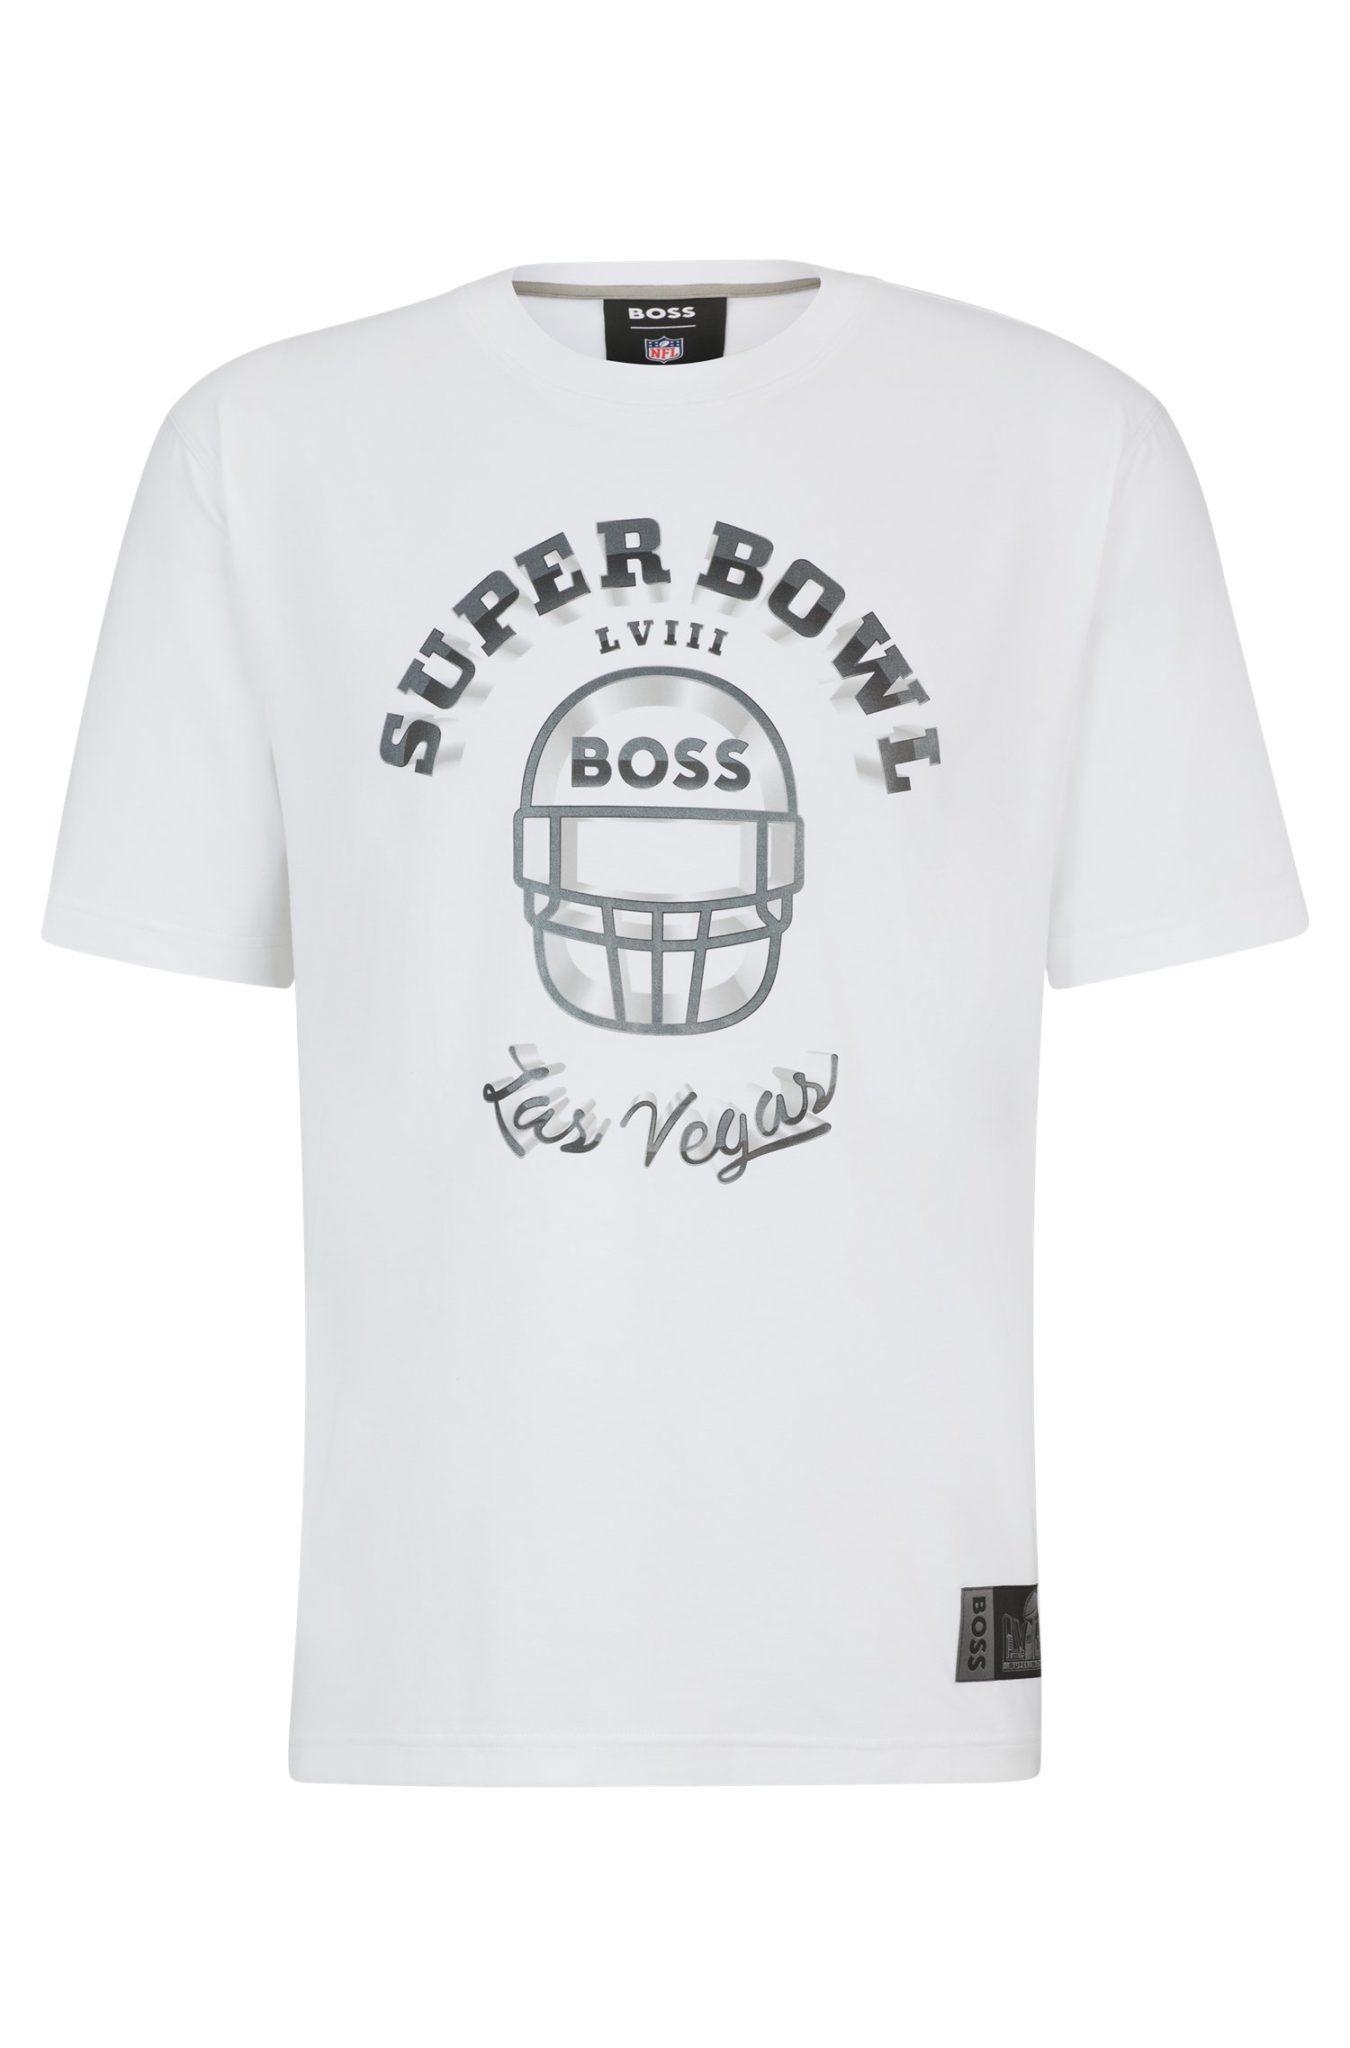 Hugo Boss T-shirt BOSS x NFL en coton stretch avec imprimé artistique